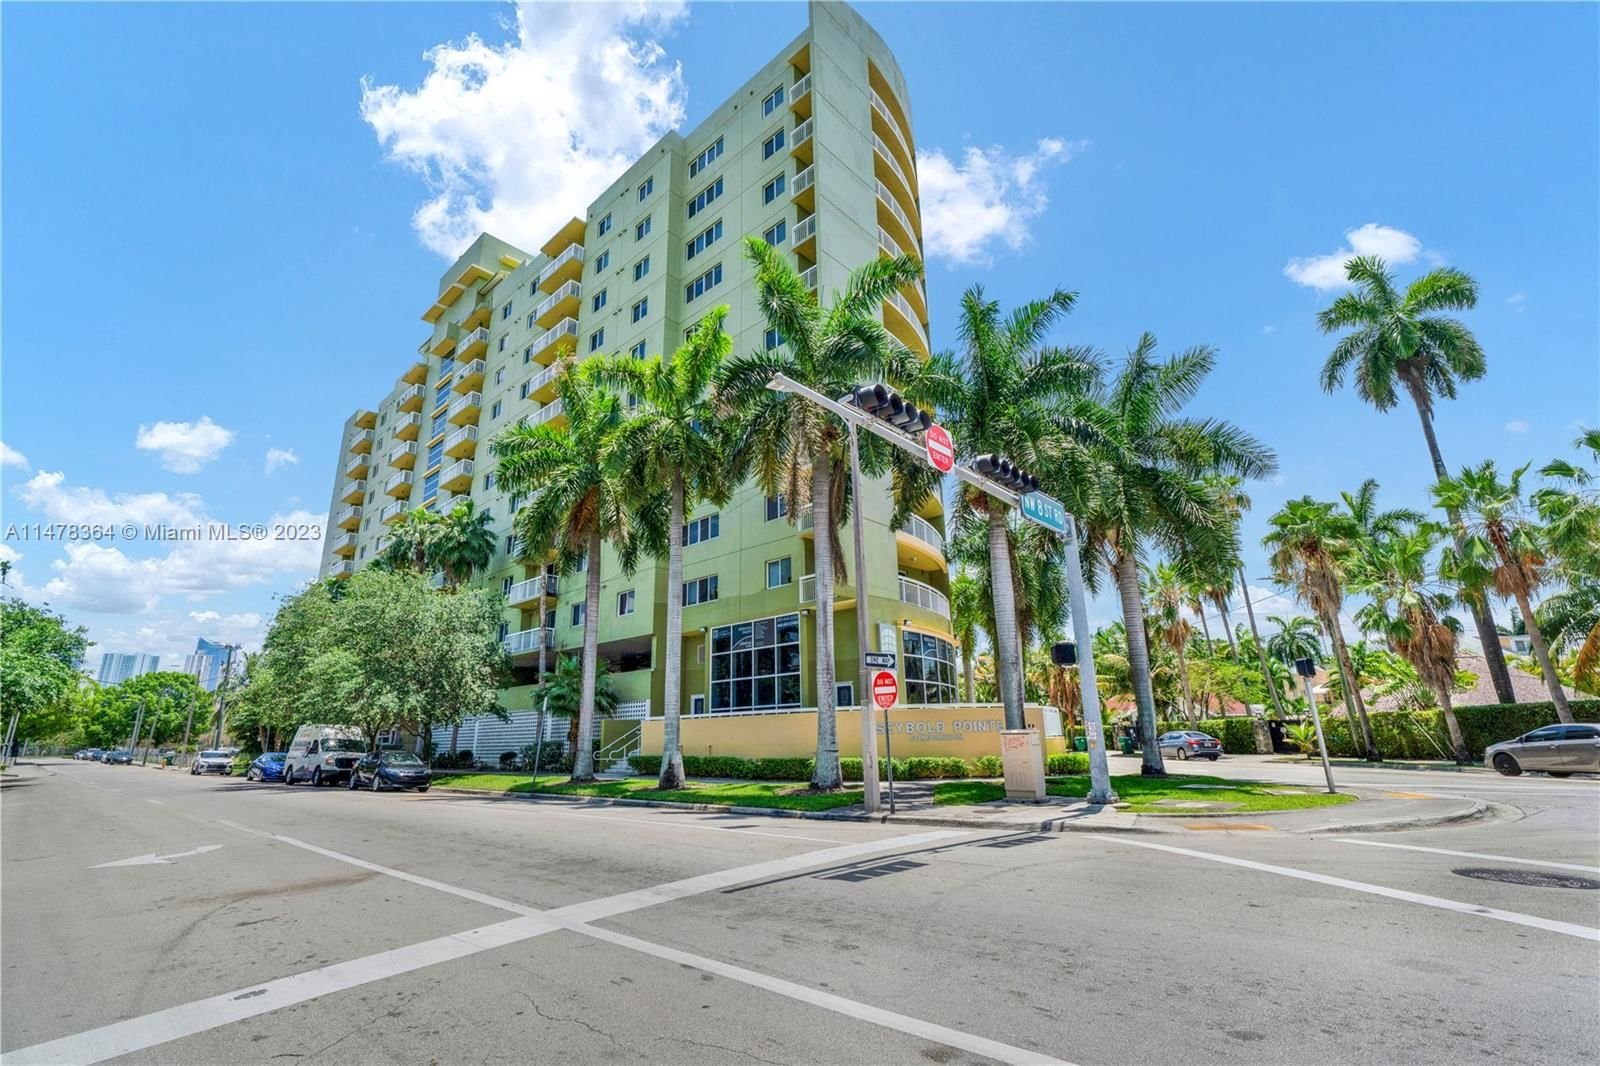 Real estate property located at 816 11th St #701, Miami-Dade County, SEYBOLD POINTE CONDO, Miami, FL